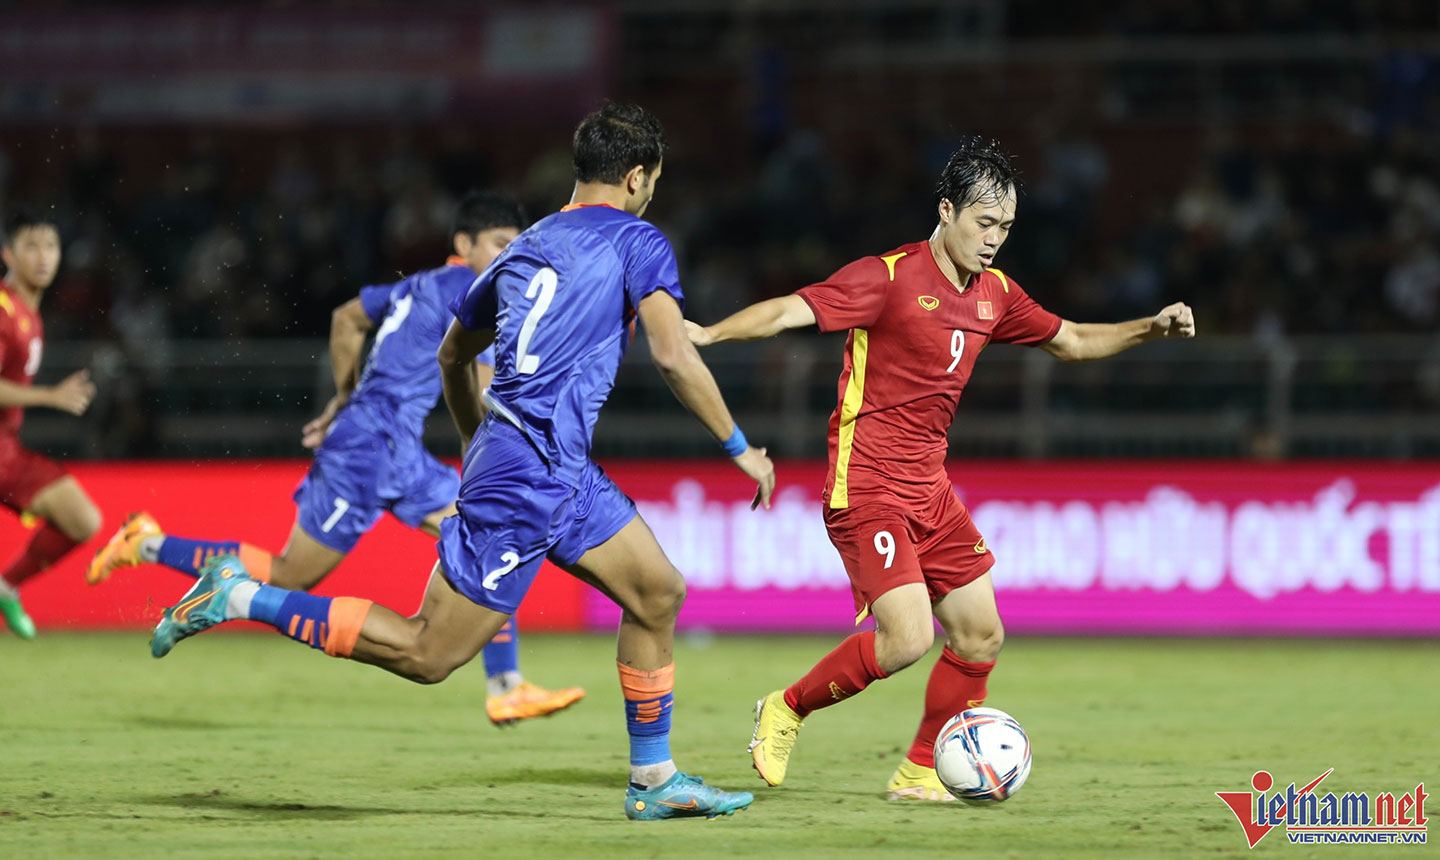 Văn Toàn (số 9) phải mất 5 năm sau nhiều giải đấu lớn nhỏ mới ghi được  bàn thắng cho Đội tuyển Việt Nam trong trận giao hữu với Ấn Độ. Ảnh: Vietnamnet.vn